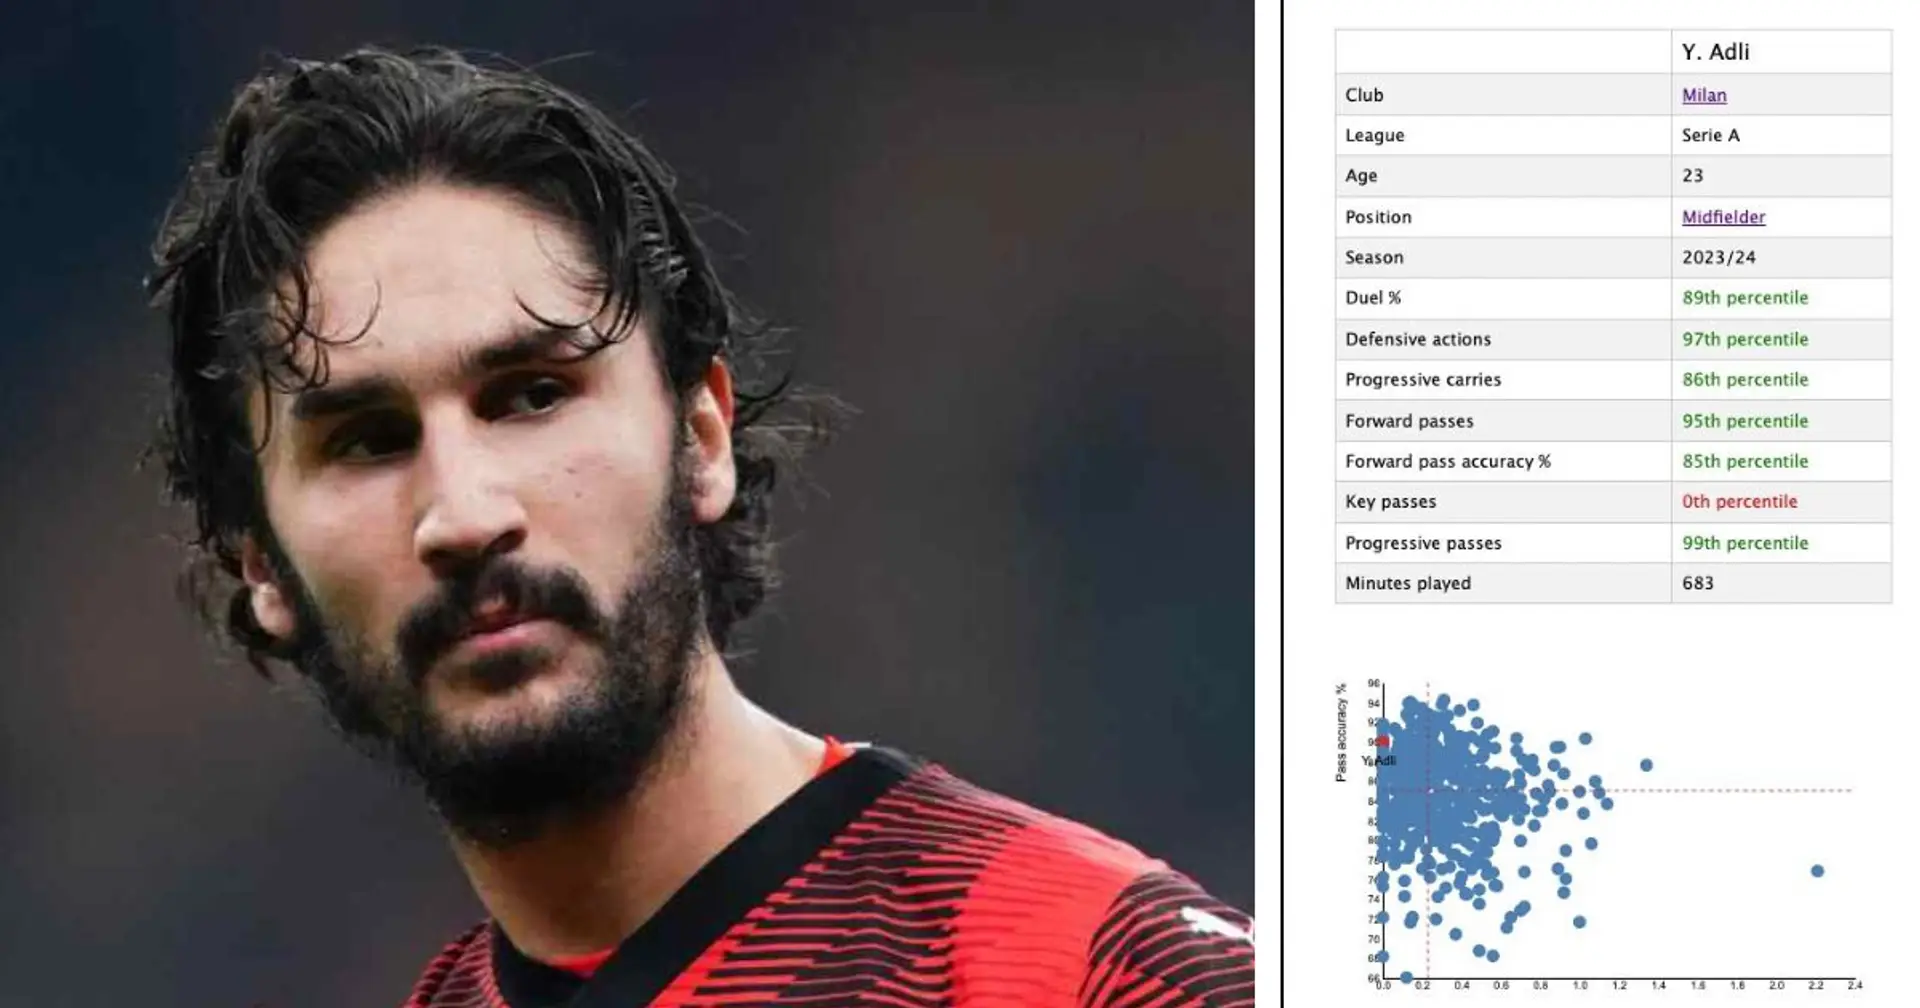 Adli miglior centrocampista in Serie A? I numeri del giocatore del Milan sono impressionanti